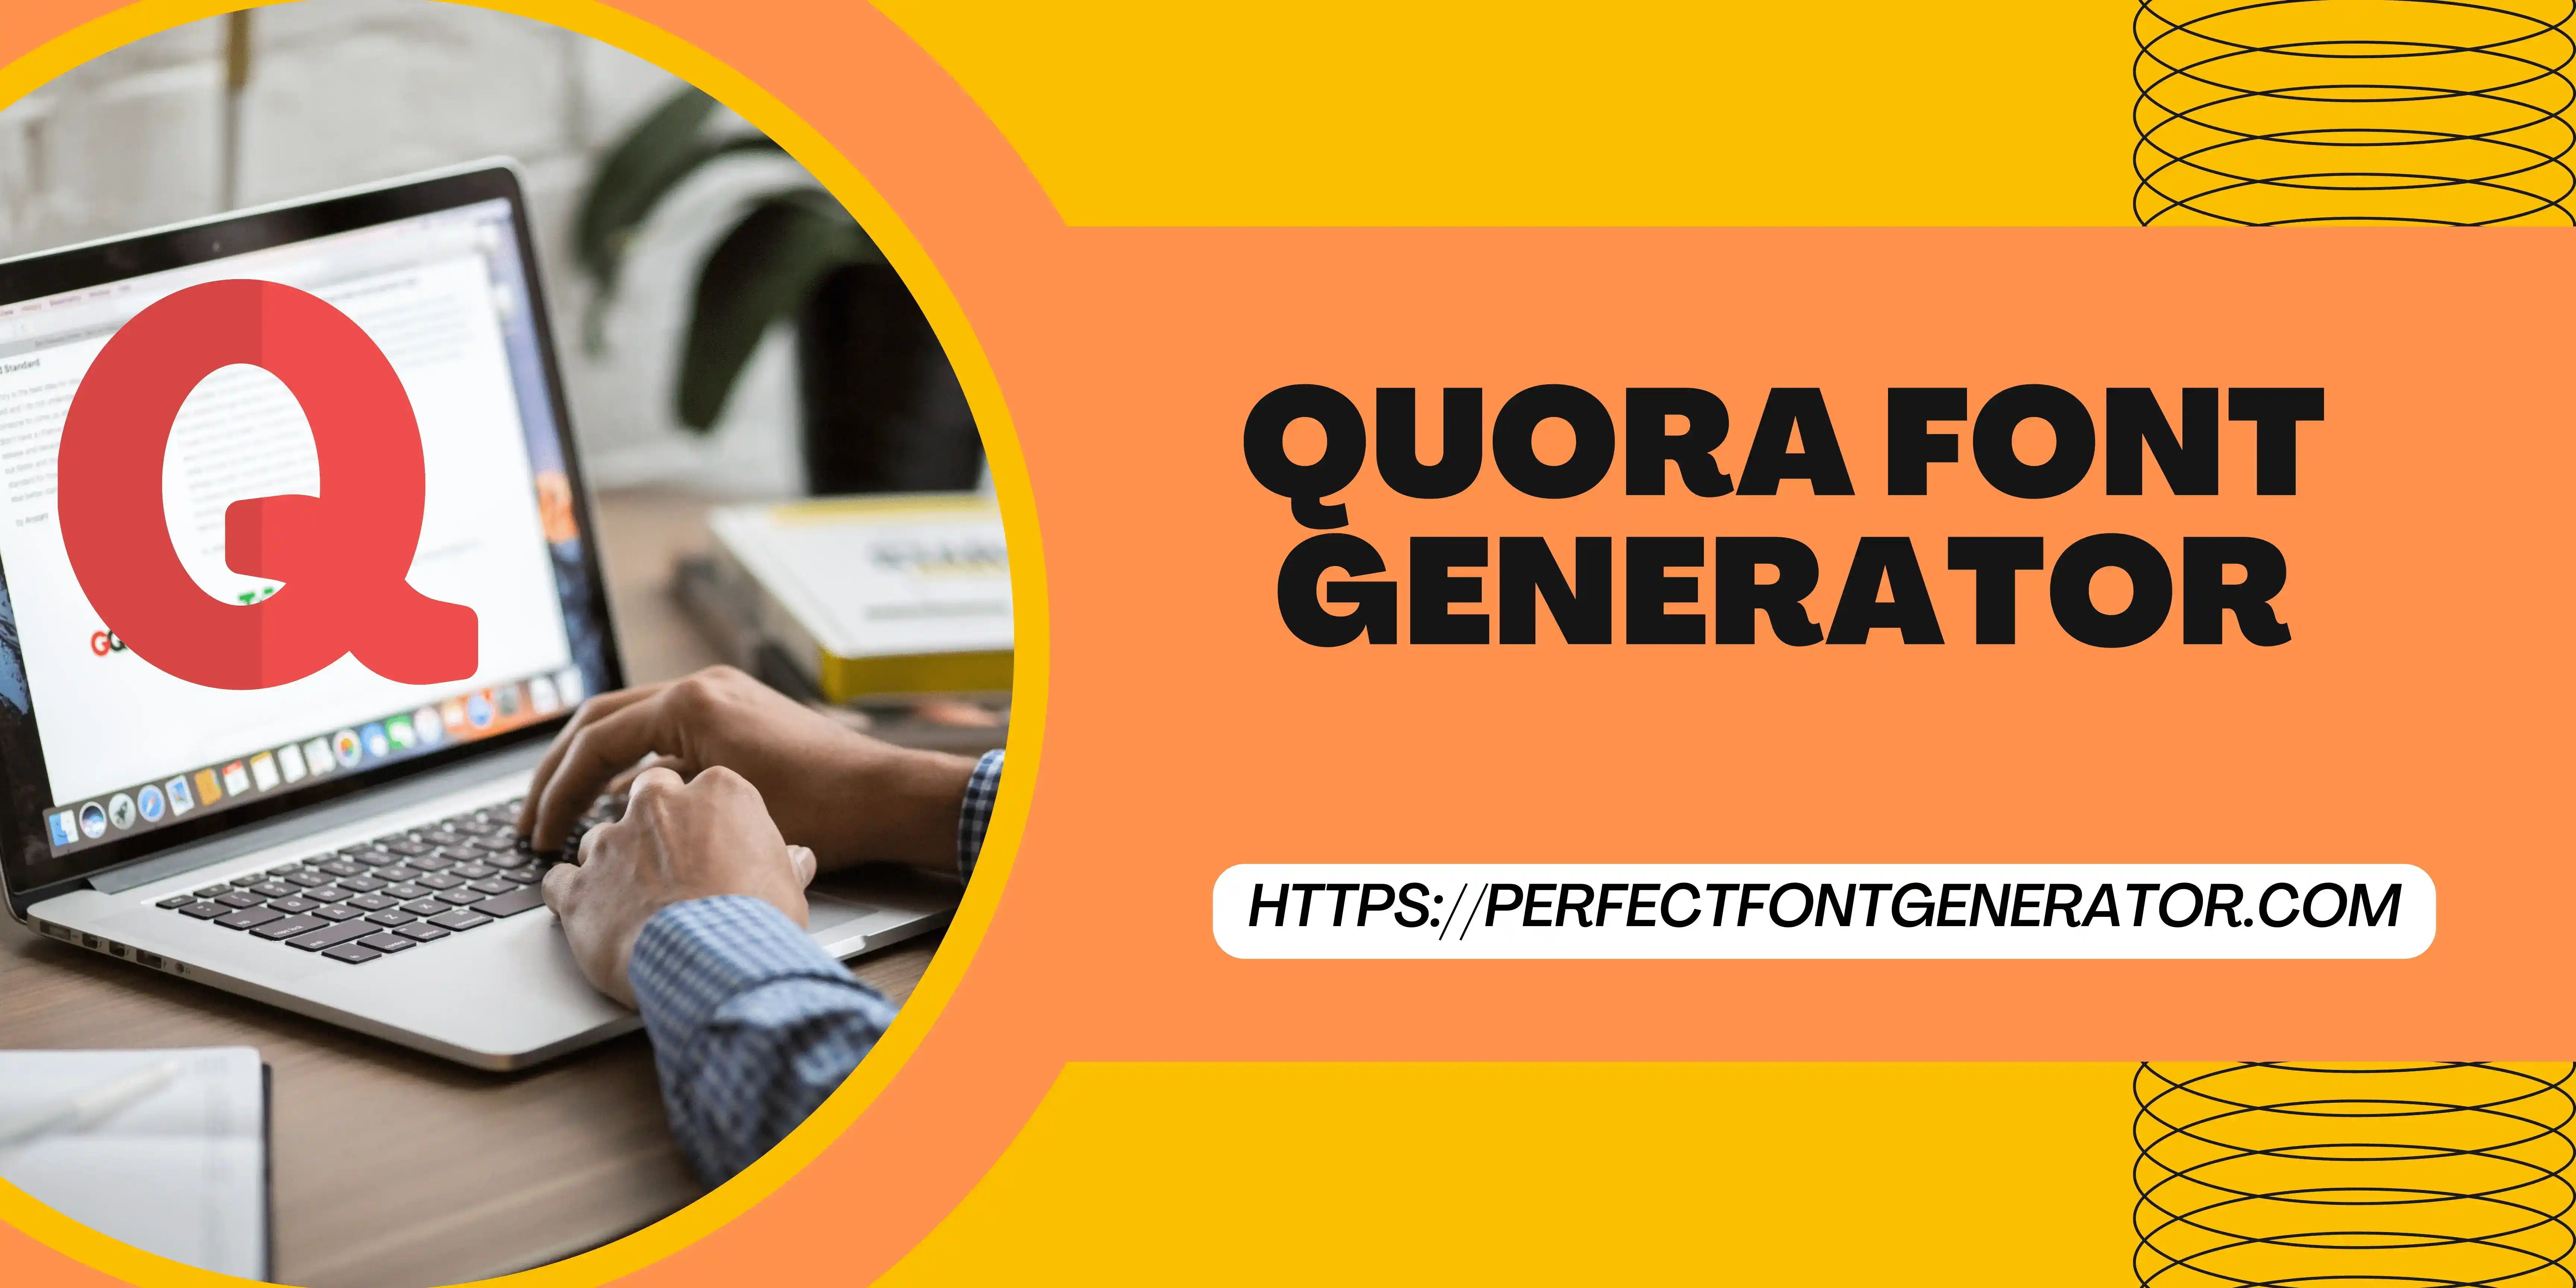 Quora font generator